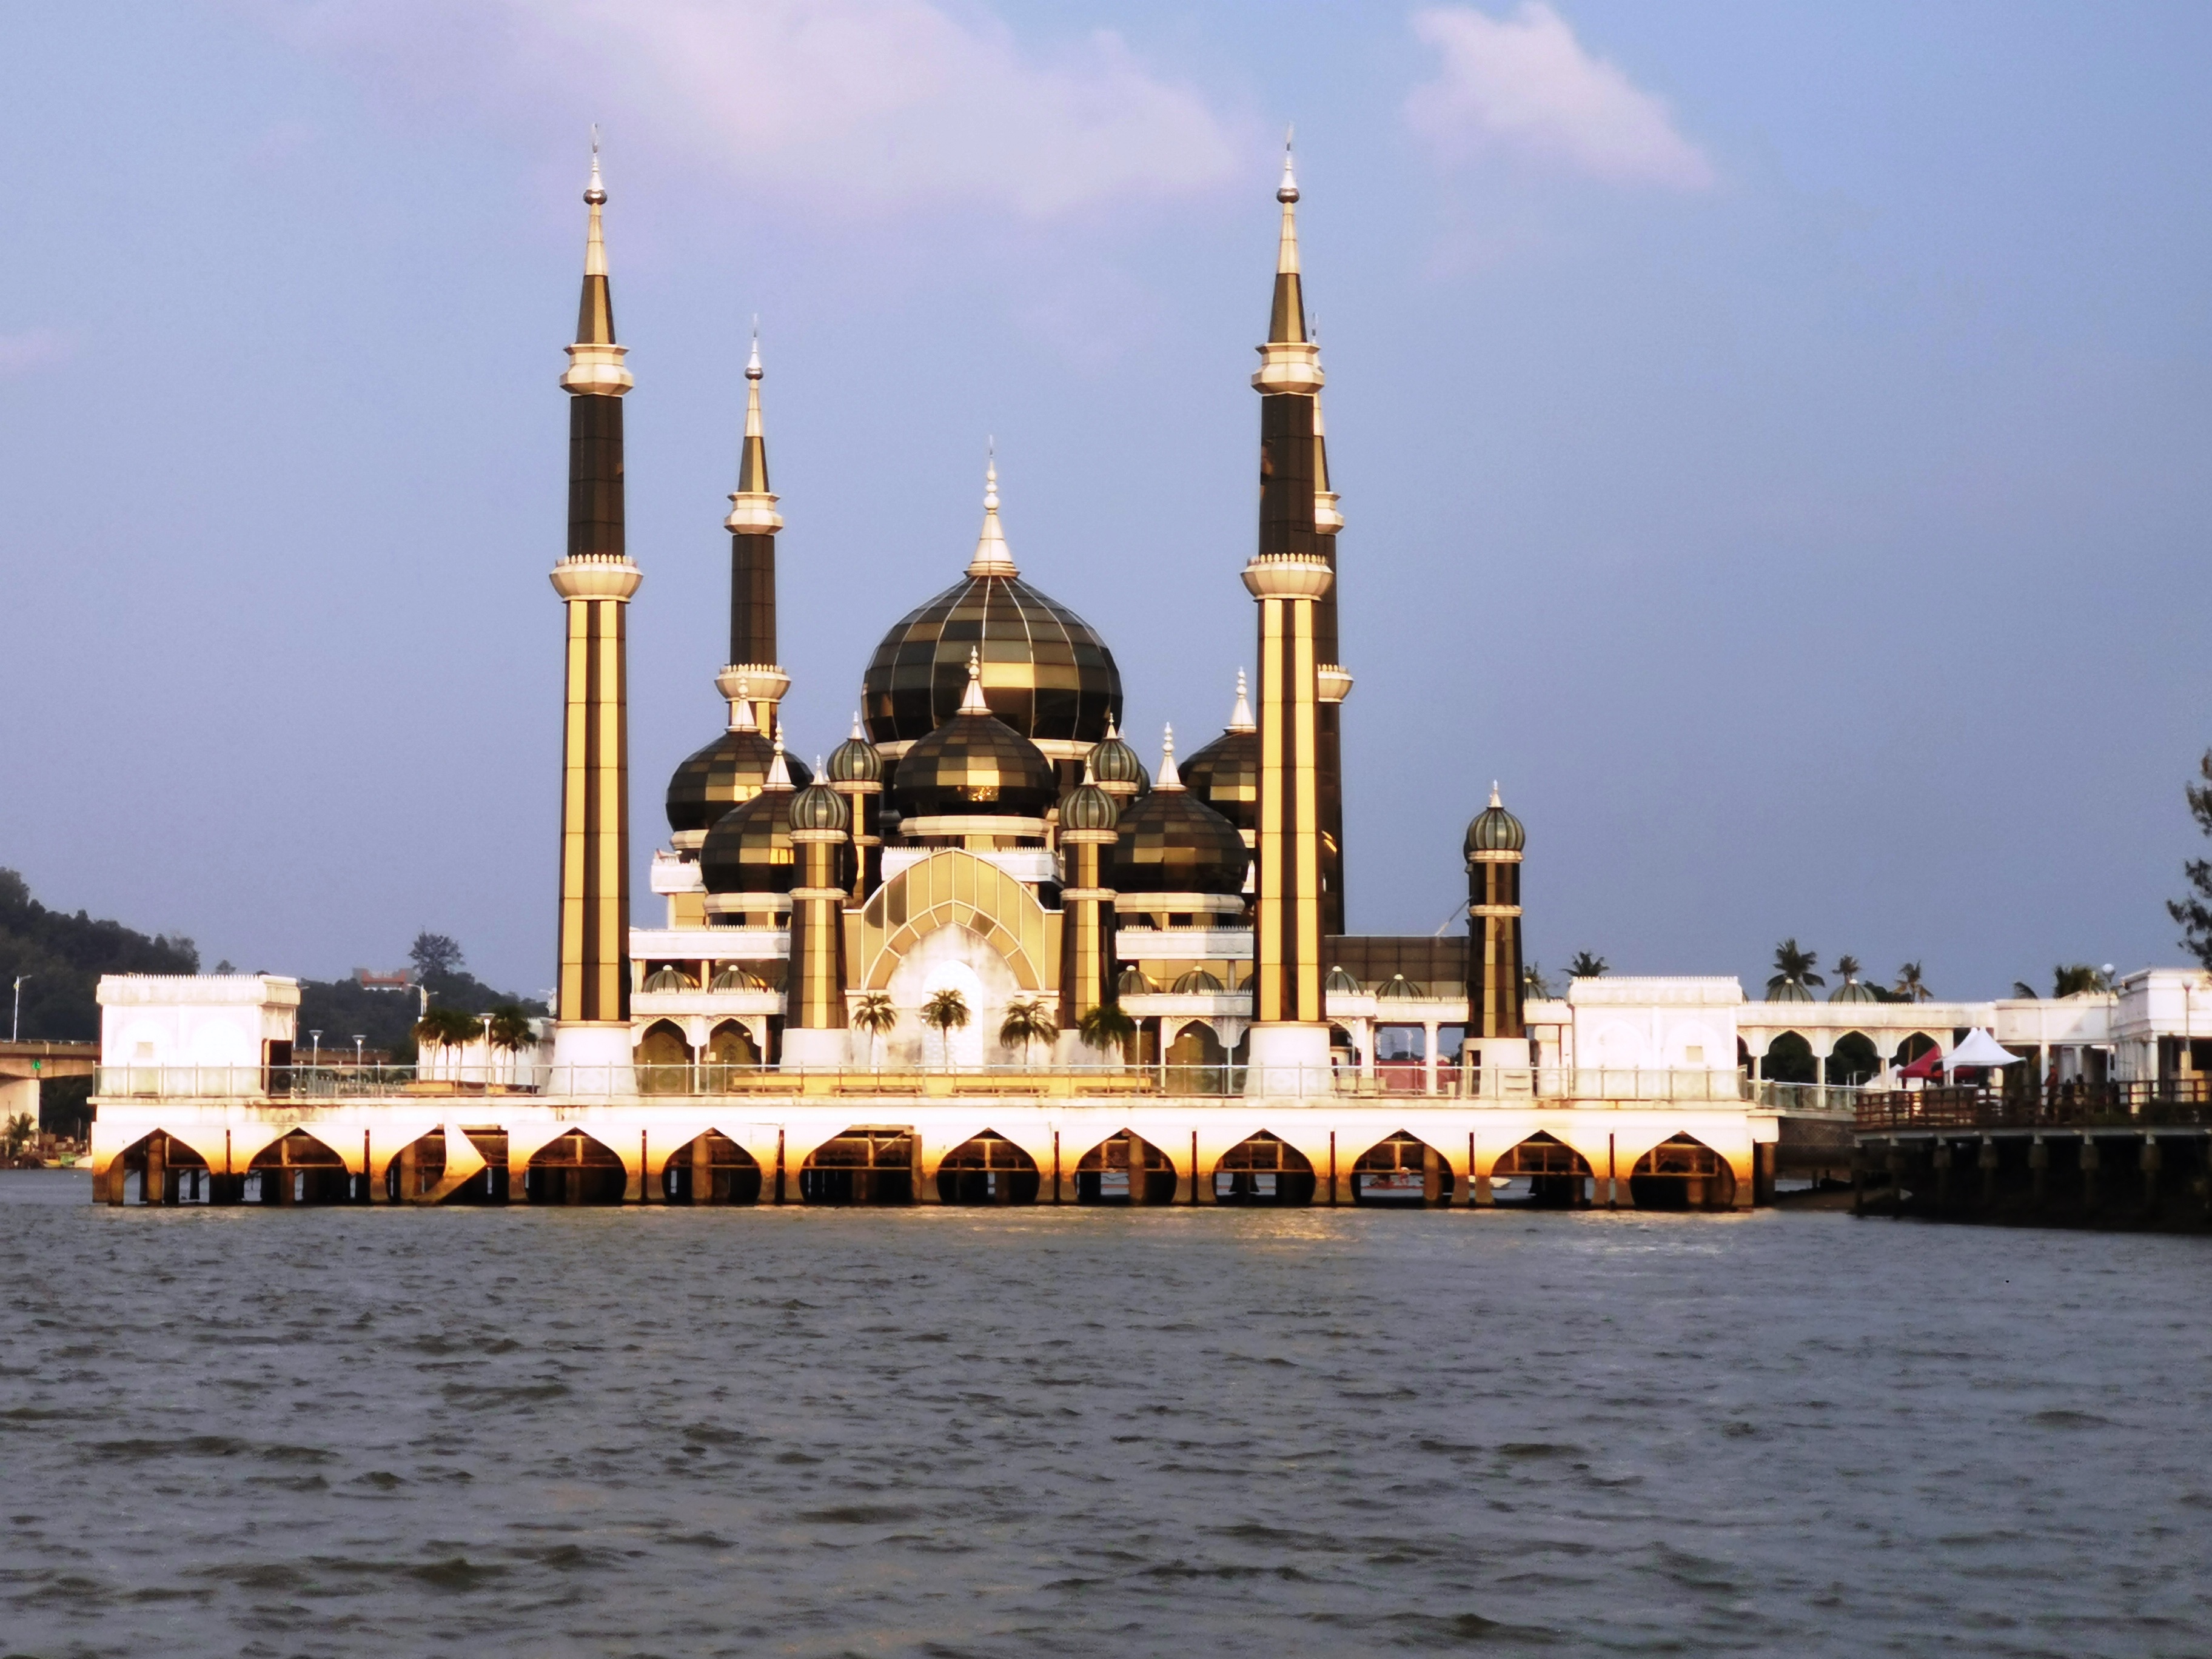 从游览船上用另一角度拍摄登嘉楼最著名的水晶清真寺。-杨琇媖摄-